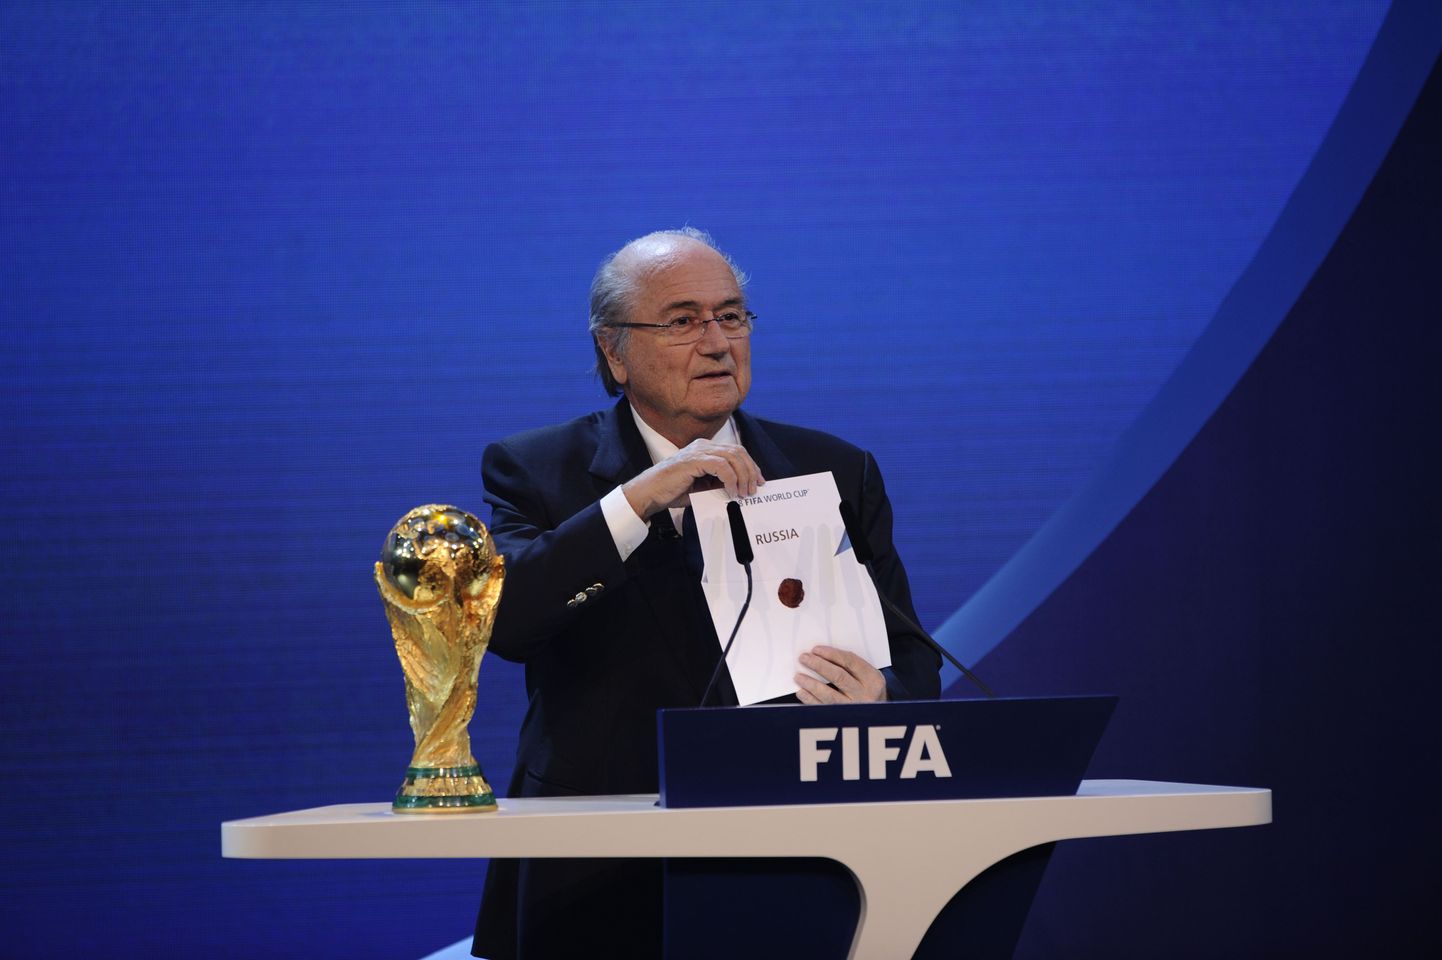 Президент ФИФА Блаттер объявляет результаты голосования по выборам страны-организатора ЧМ по футболу 2018 года. Победила в голосовании Россия.